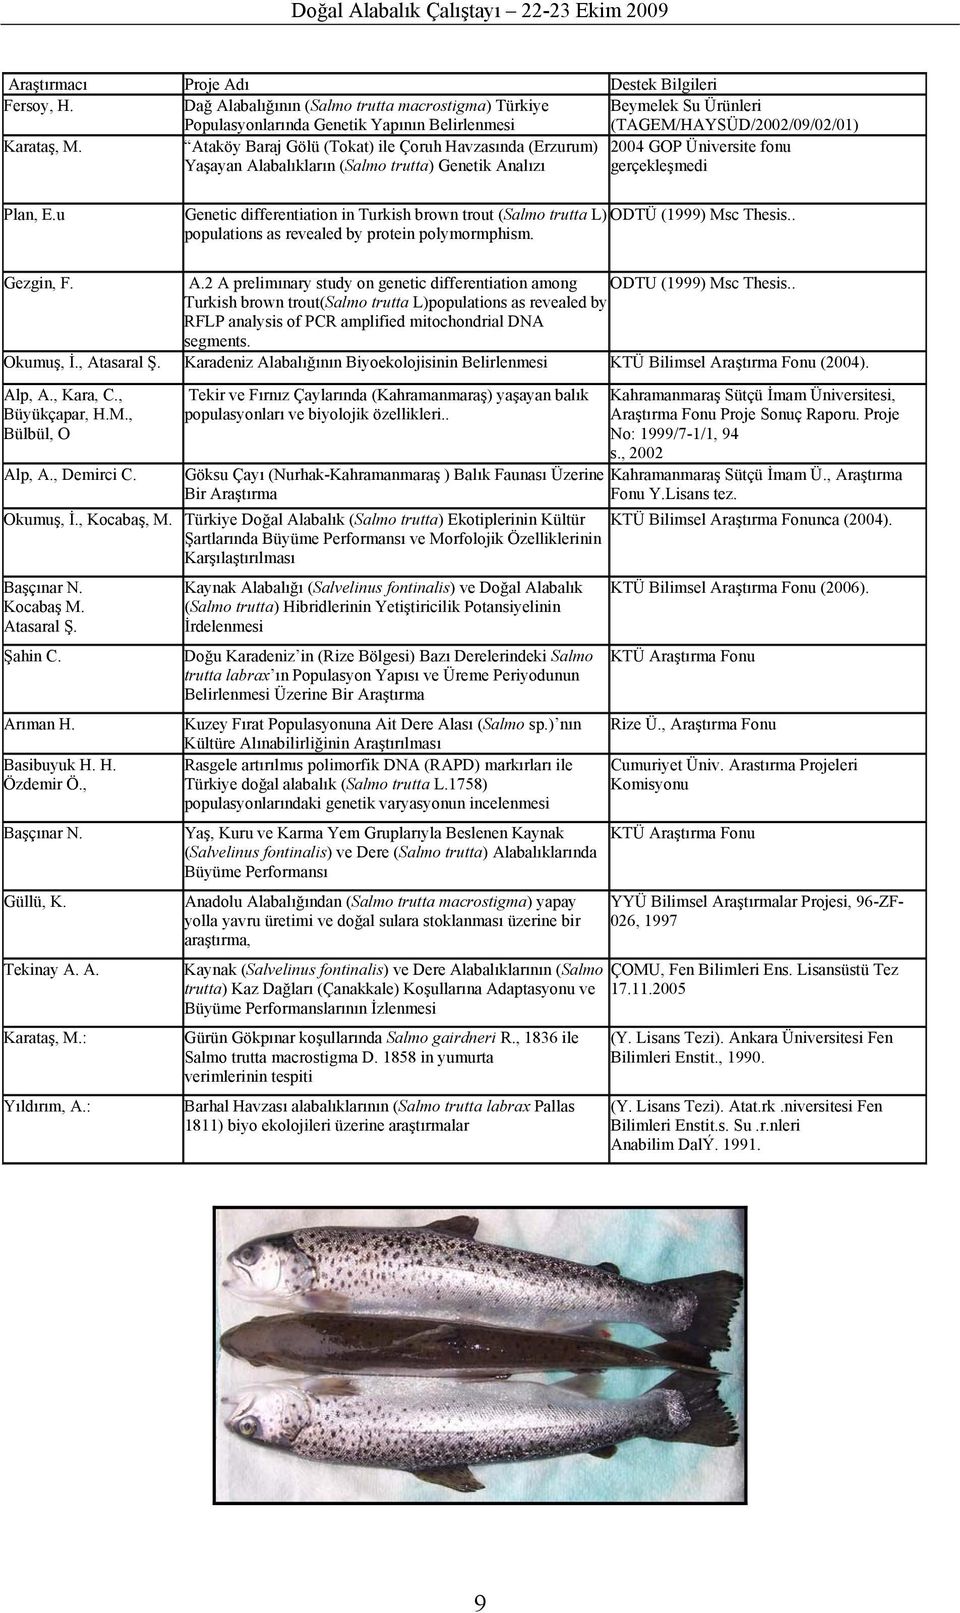 Ataköy Baraj Gölü (Tokat) ile Çoruh Havzasında (Erzurum) 2004 GOP Üniversite fonu Yaşayan Alabalıkların (Salmo trutta) Genetik Analızı gerçekleşmedi Plan, E.